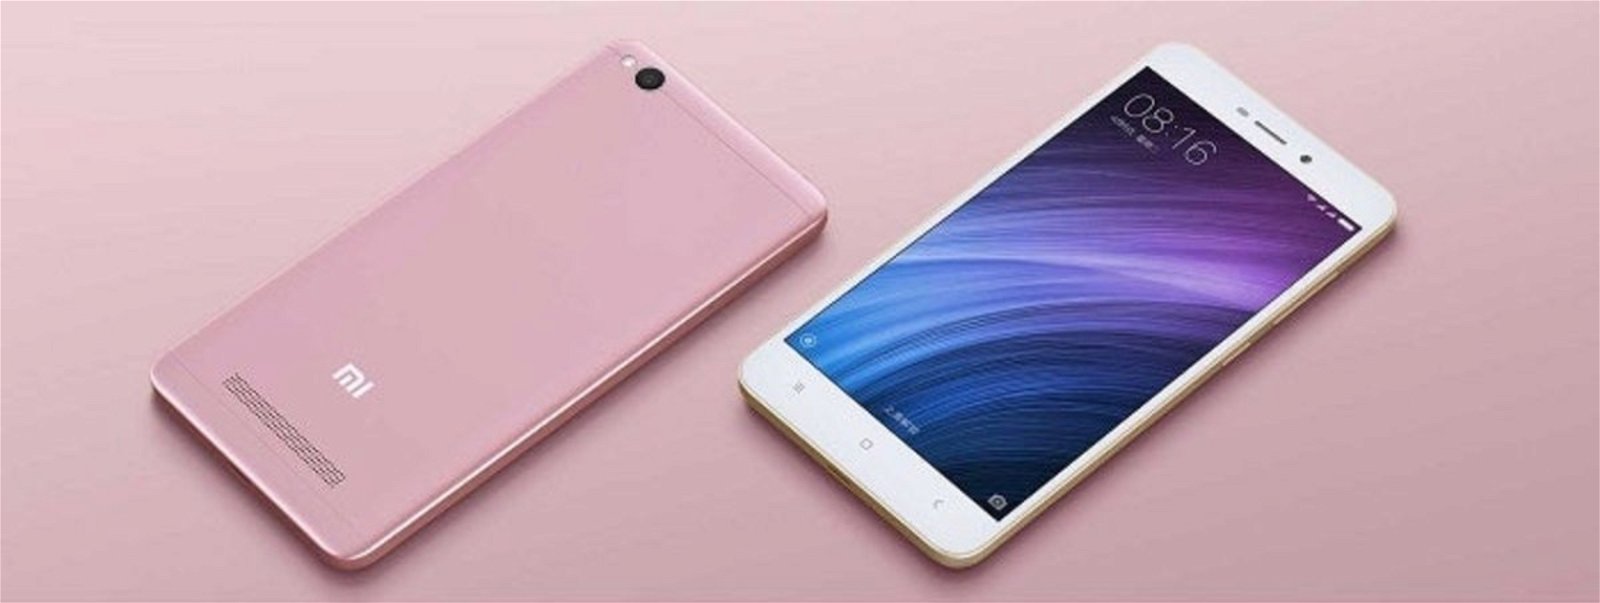 Xiaomi redmi 4a color rosa